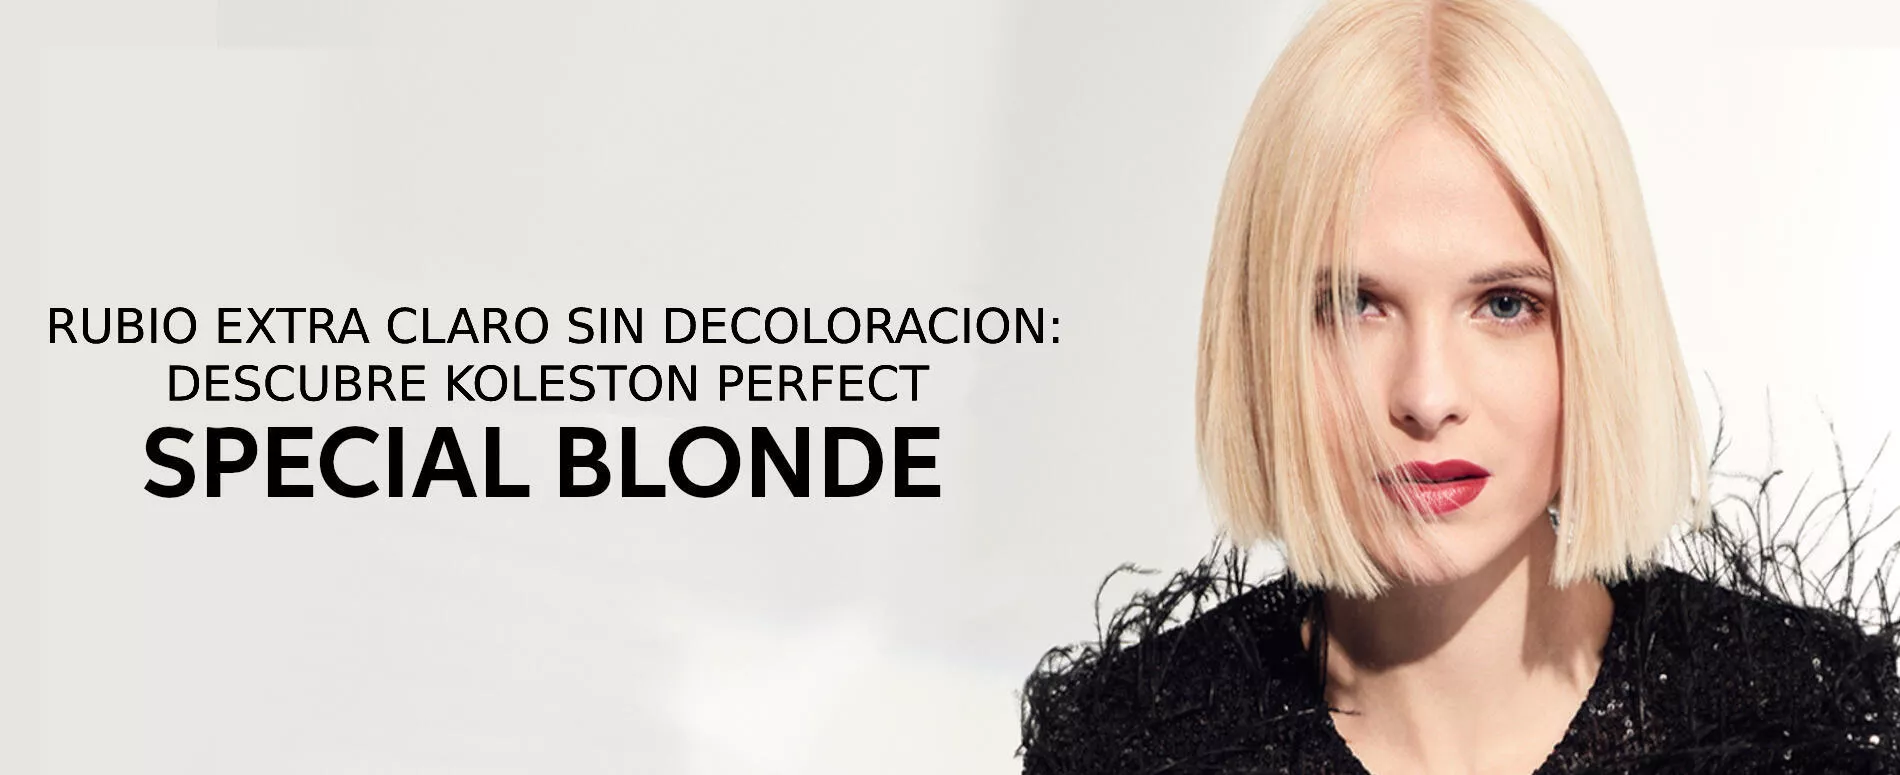 Modelo con un look rubio corto creado con Special Blonde de Koleston Perfect